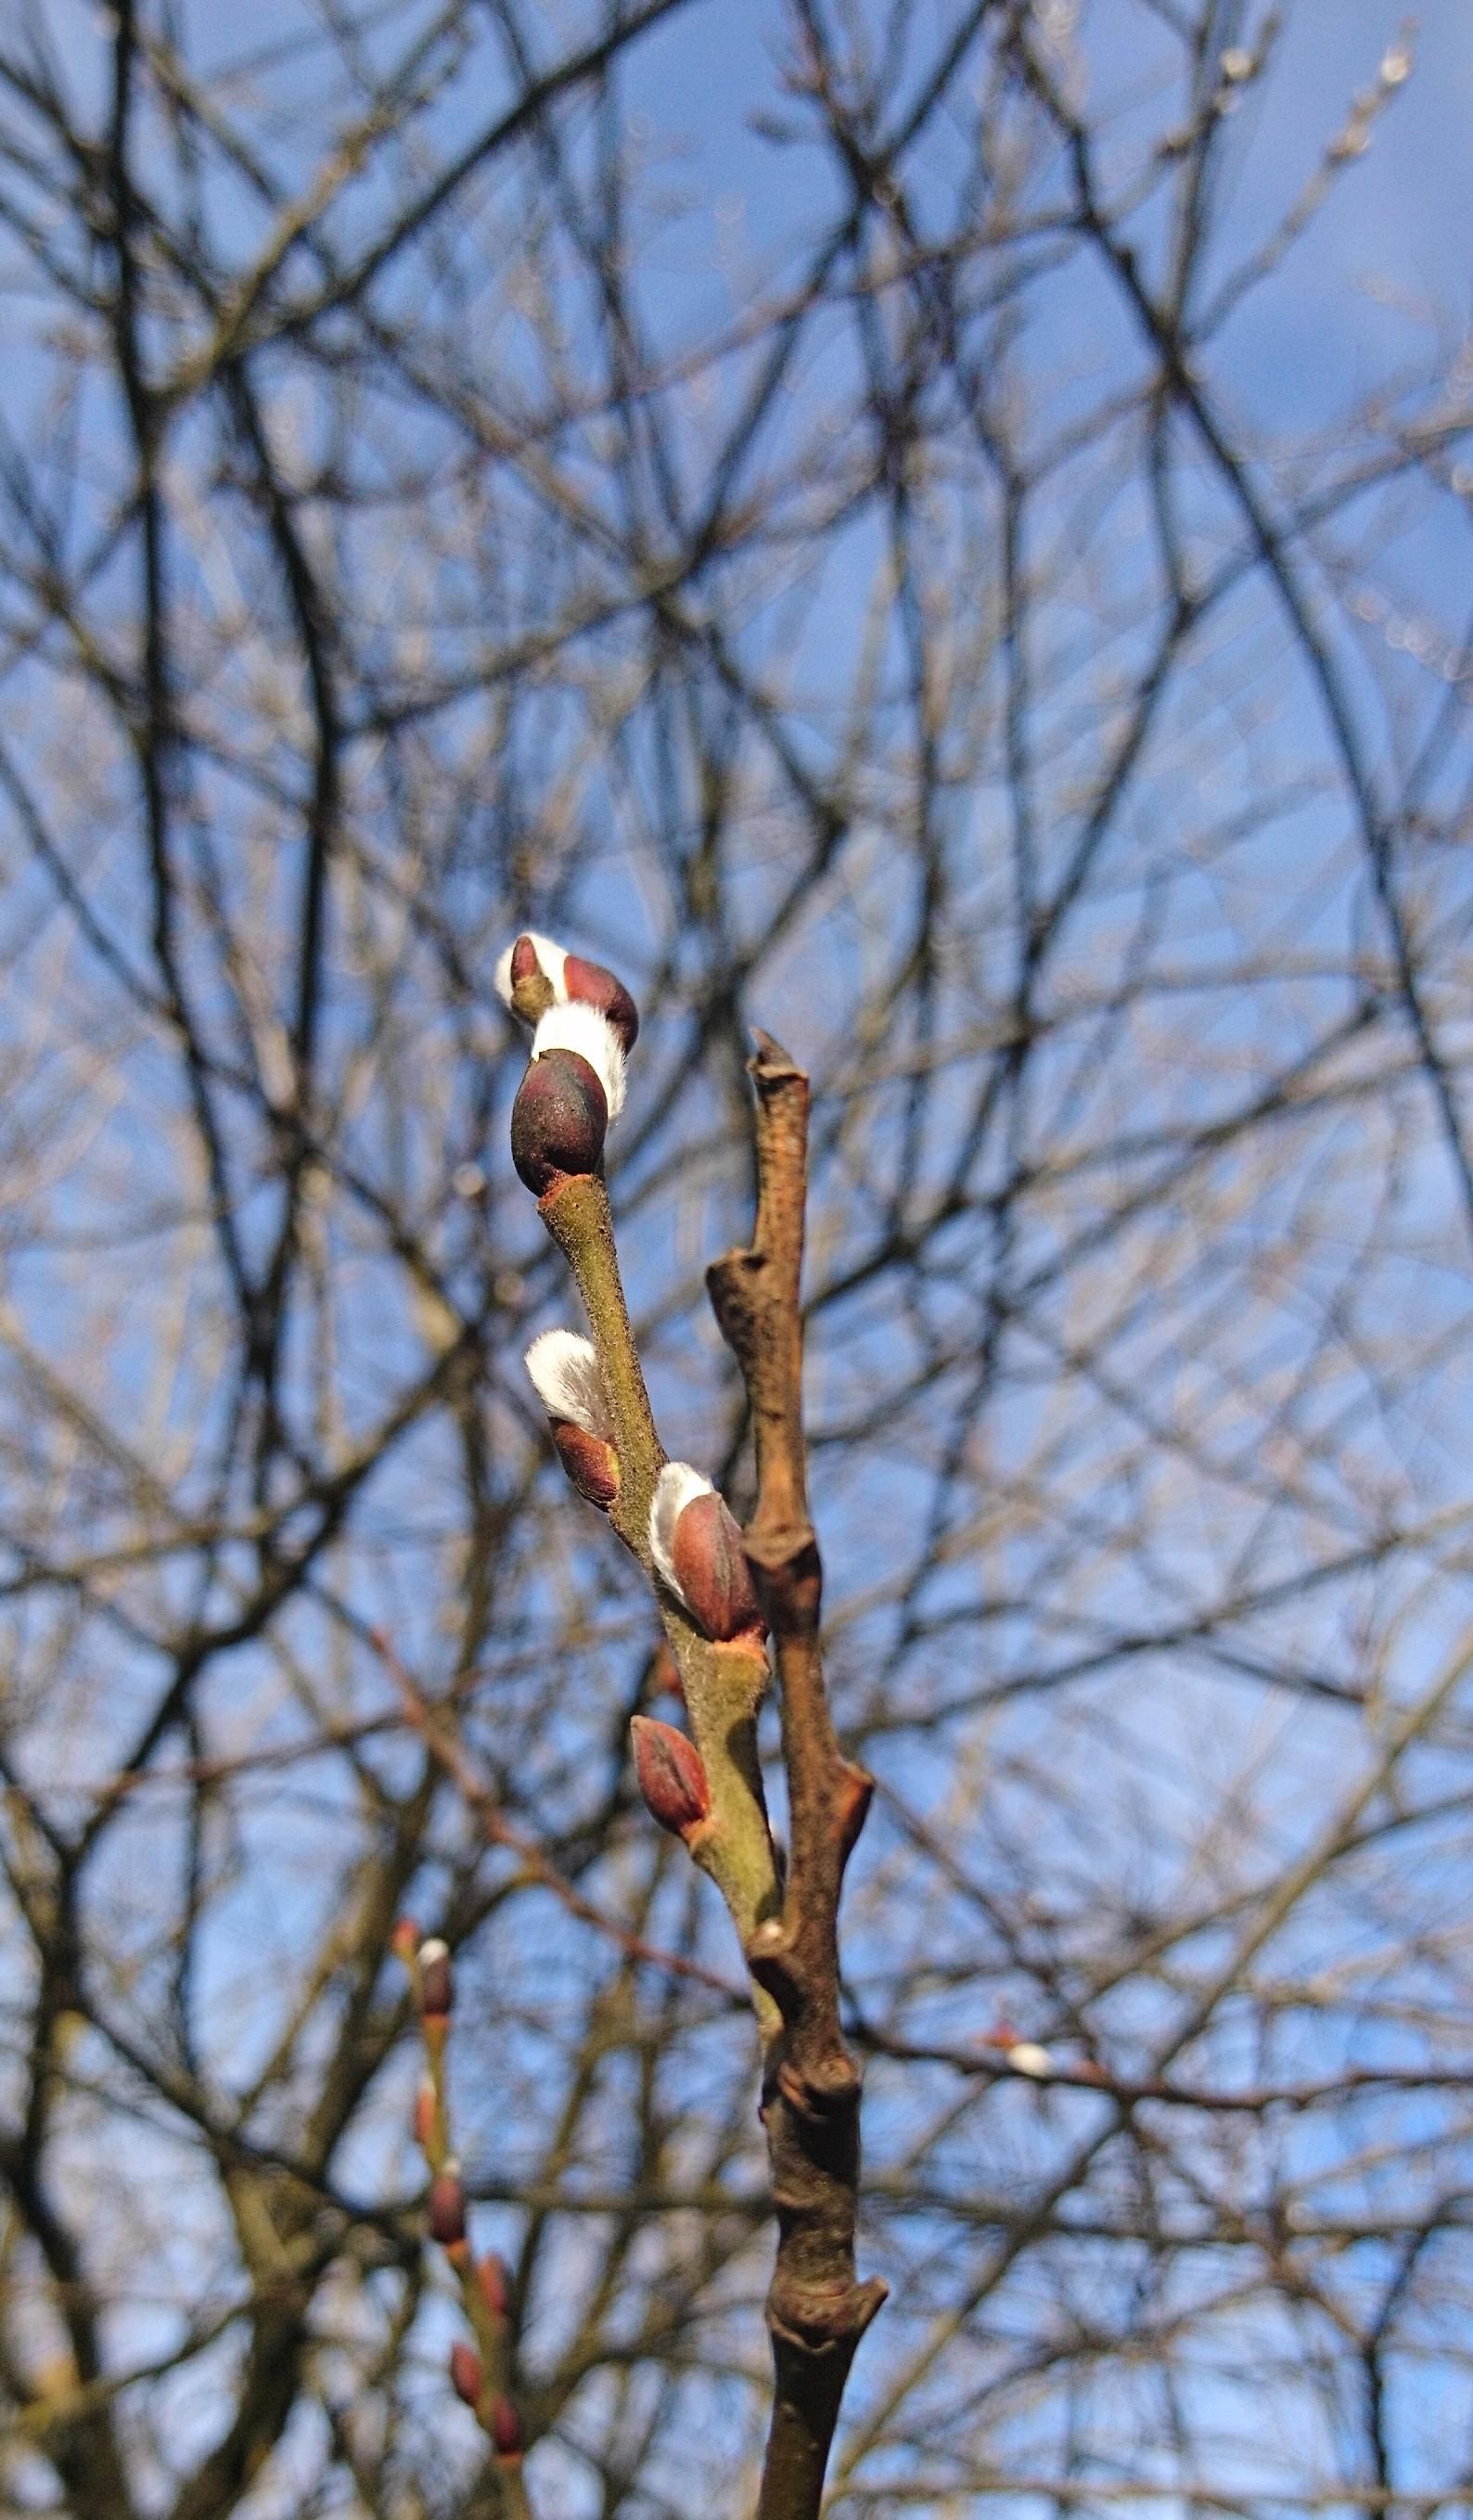 Signs of spring 🌱

#Frühlingsgefühle 